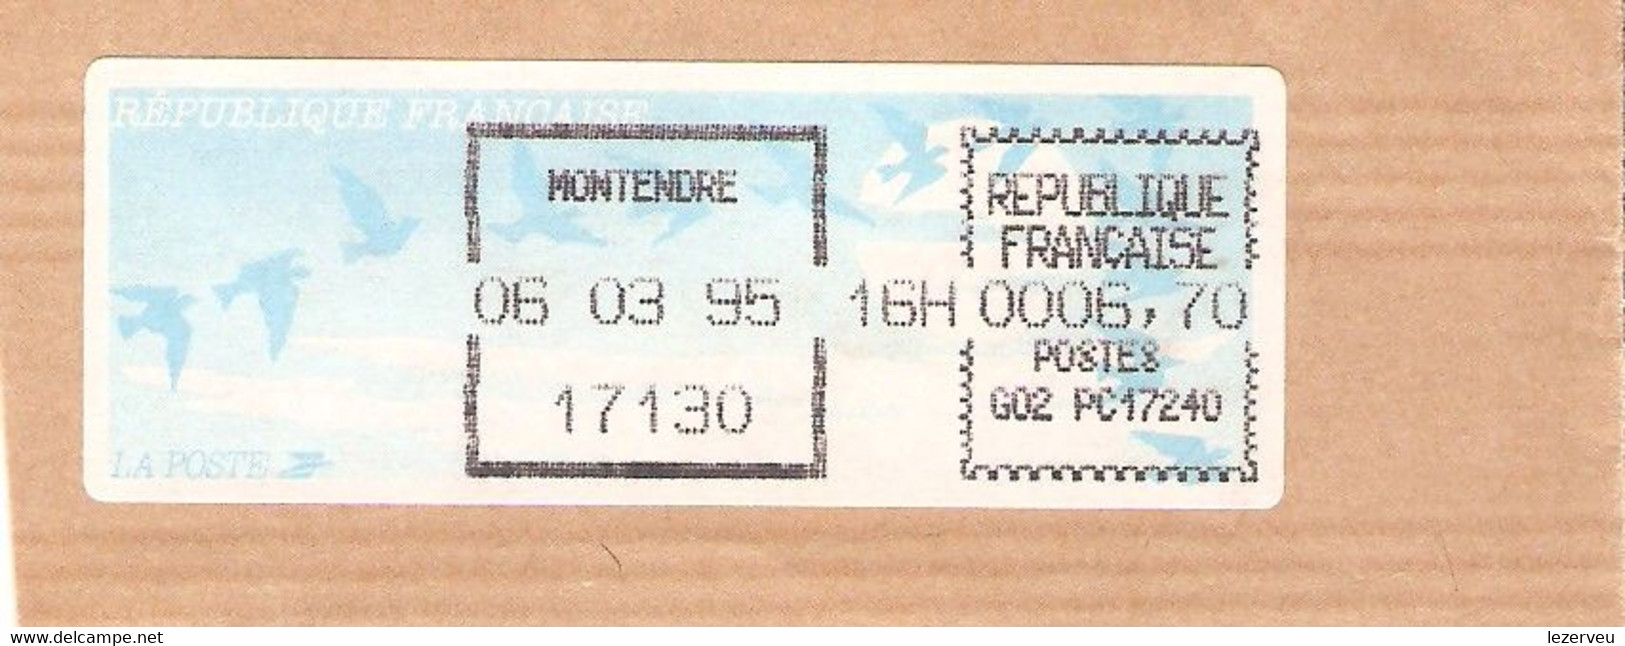 TIMBRE FRANCE VIGNETTE AFFRANCHISSEMENT  OISEAUX DE JUBERT MONTENDRE 1995 6.70 FR - 1990 « Oiseaux De Jubert »